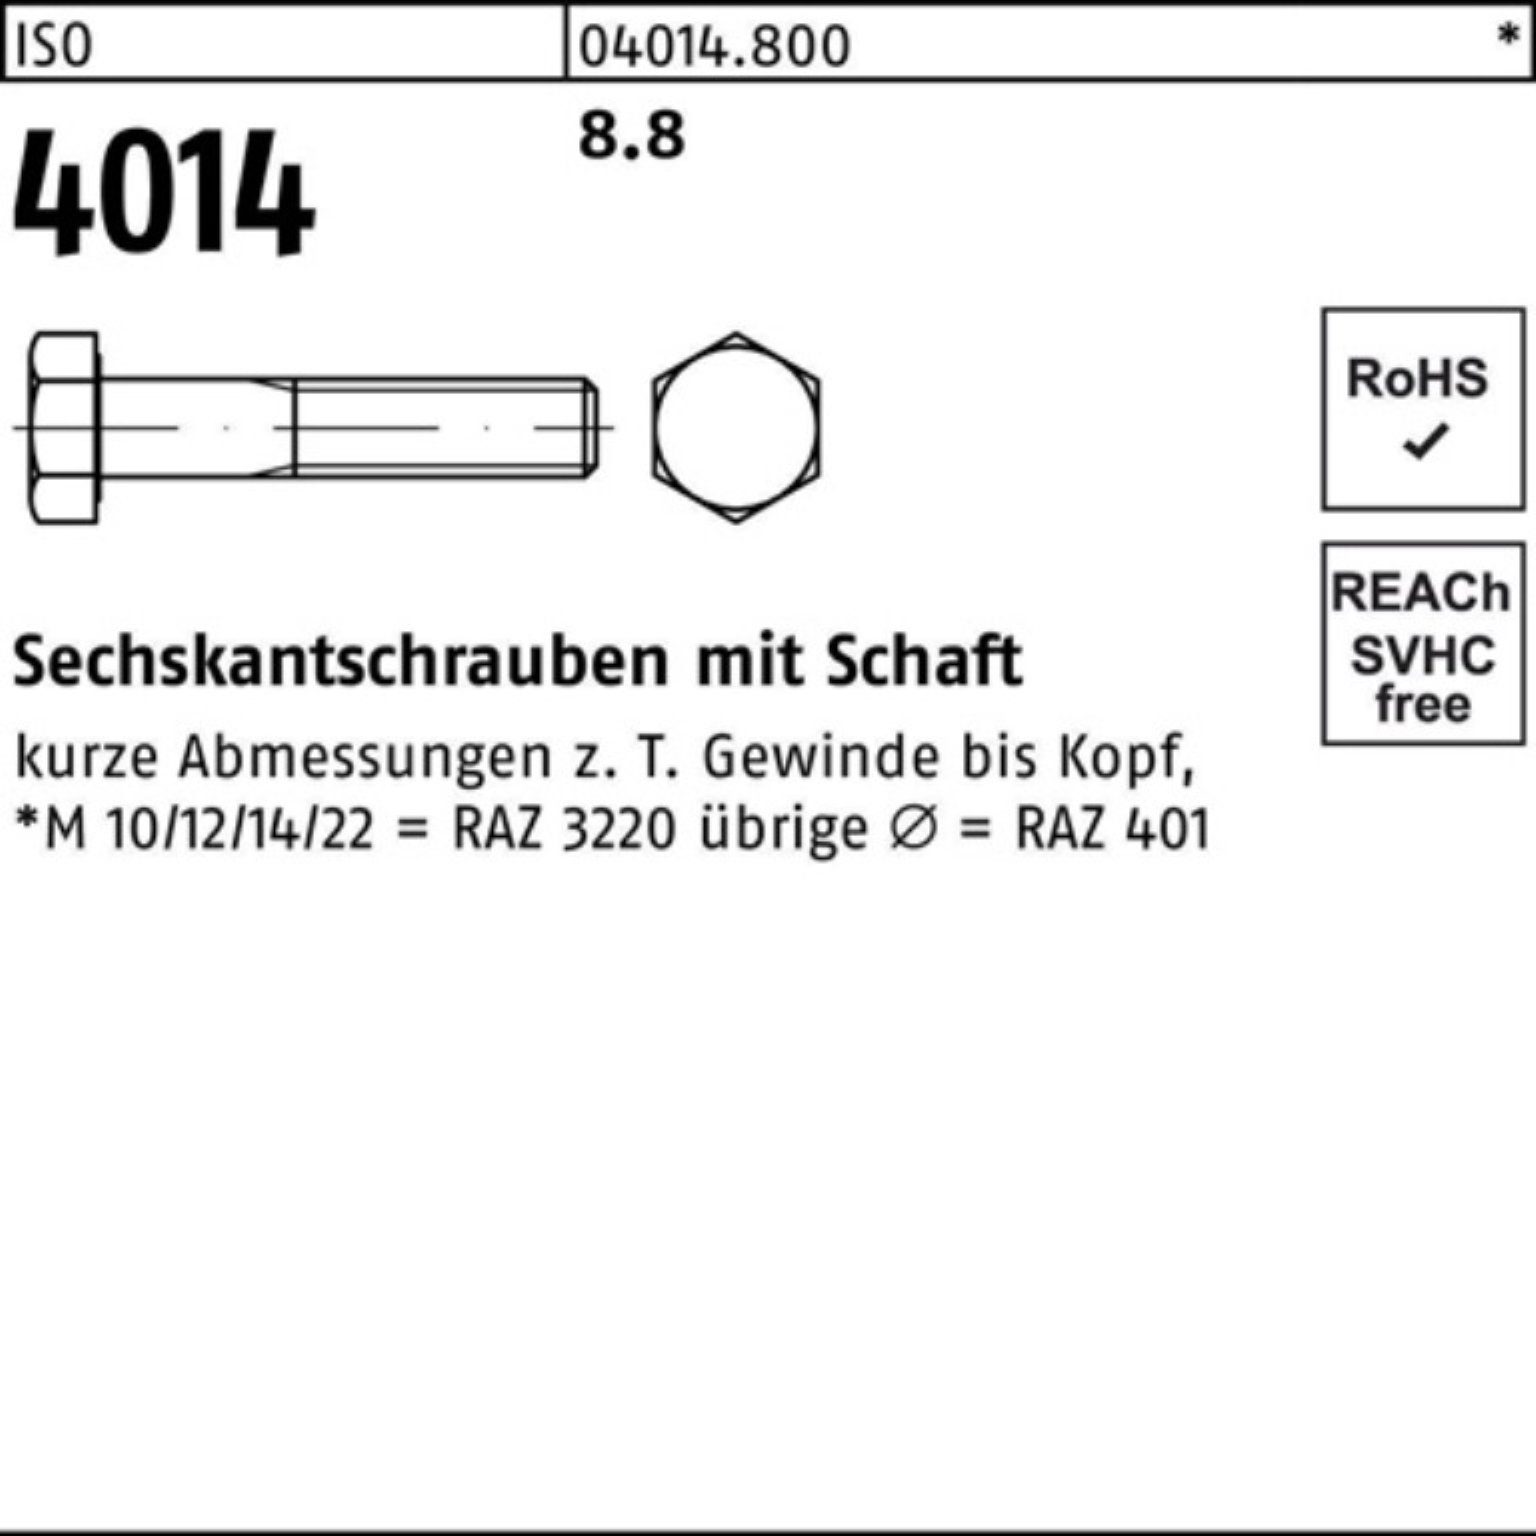 1 Stück Bufab ISO Sechskantschraube 140 100er Sechskantschraube M39x 4014 ISO 8.8 Schaft Pack